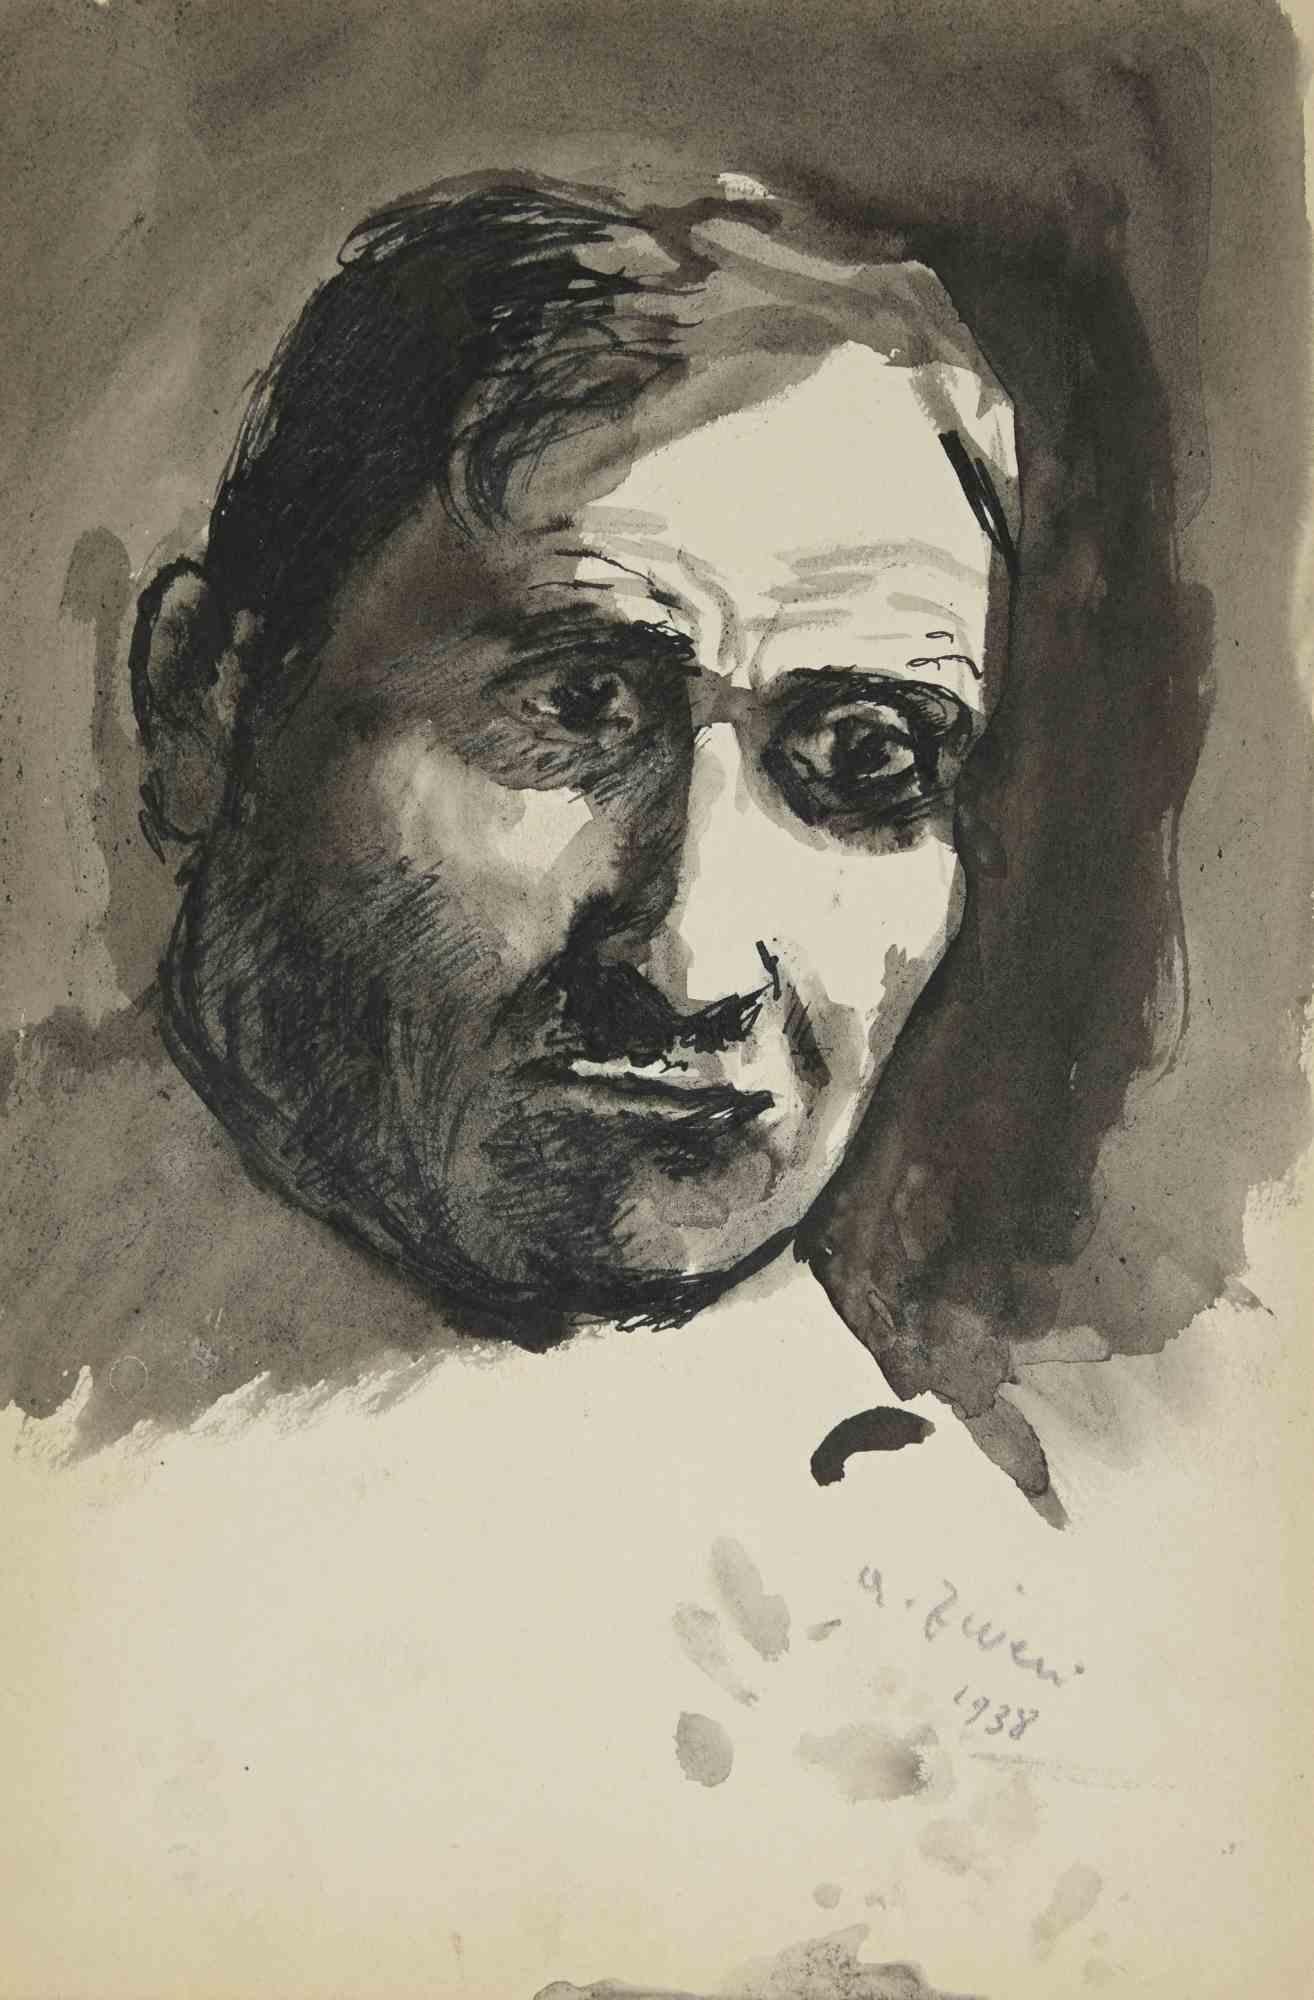 Das Porträt ist eine Zeichnung von Alberto Ziveri aus dem Jahr 1938.

Tusche und Aquarell auf Papier.

Handsigniert und datiert.

In gutem Zustand.

Das Kunstwerk wird durch geschickte Striche meisterhaft dargestellt.

Alberto Ziveri (Rom, 1908 -